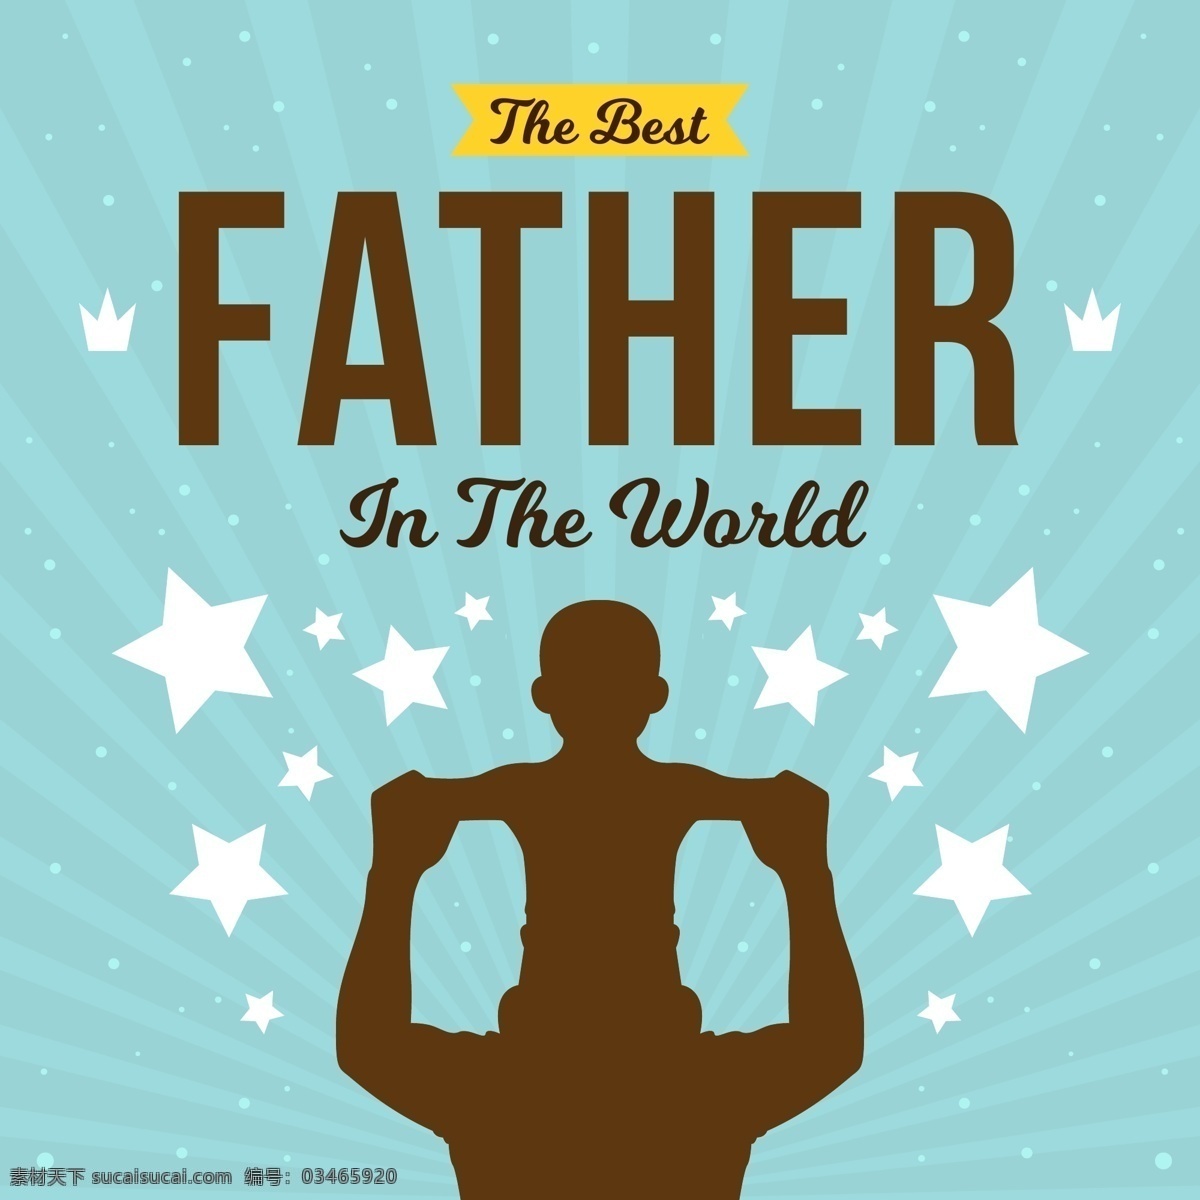 爸爸 肩膀 父亲节 元素 父亲节元素 父亲节设计 父亲节素材 父亲节蓝色 爸爸的肩膀